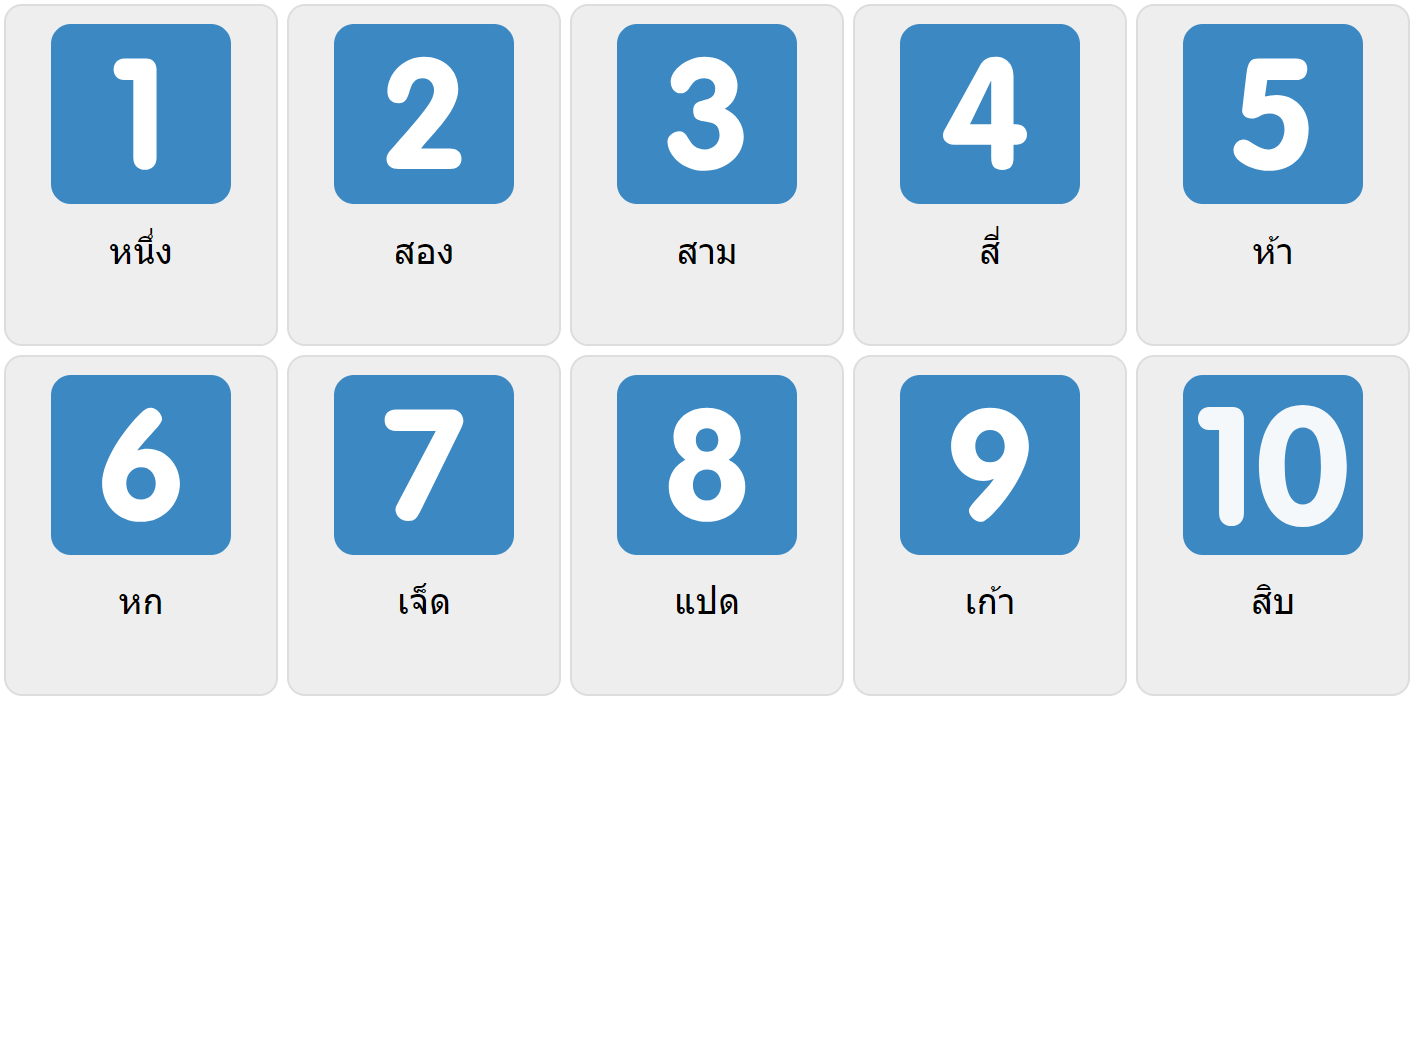 Числа 1-10 на тайском языке